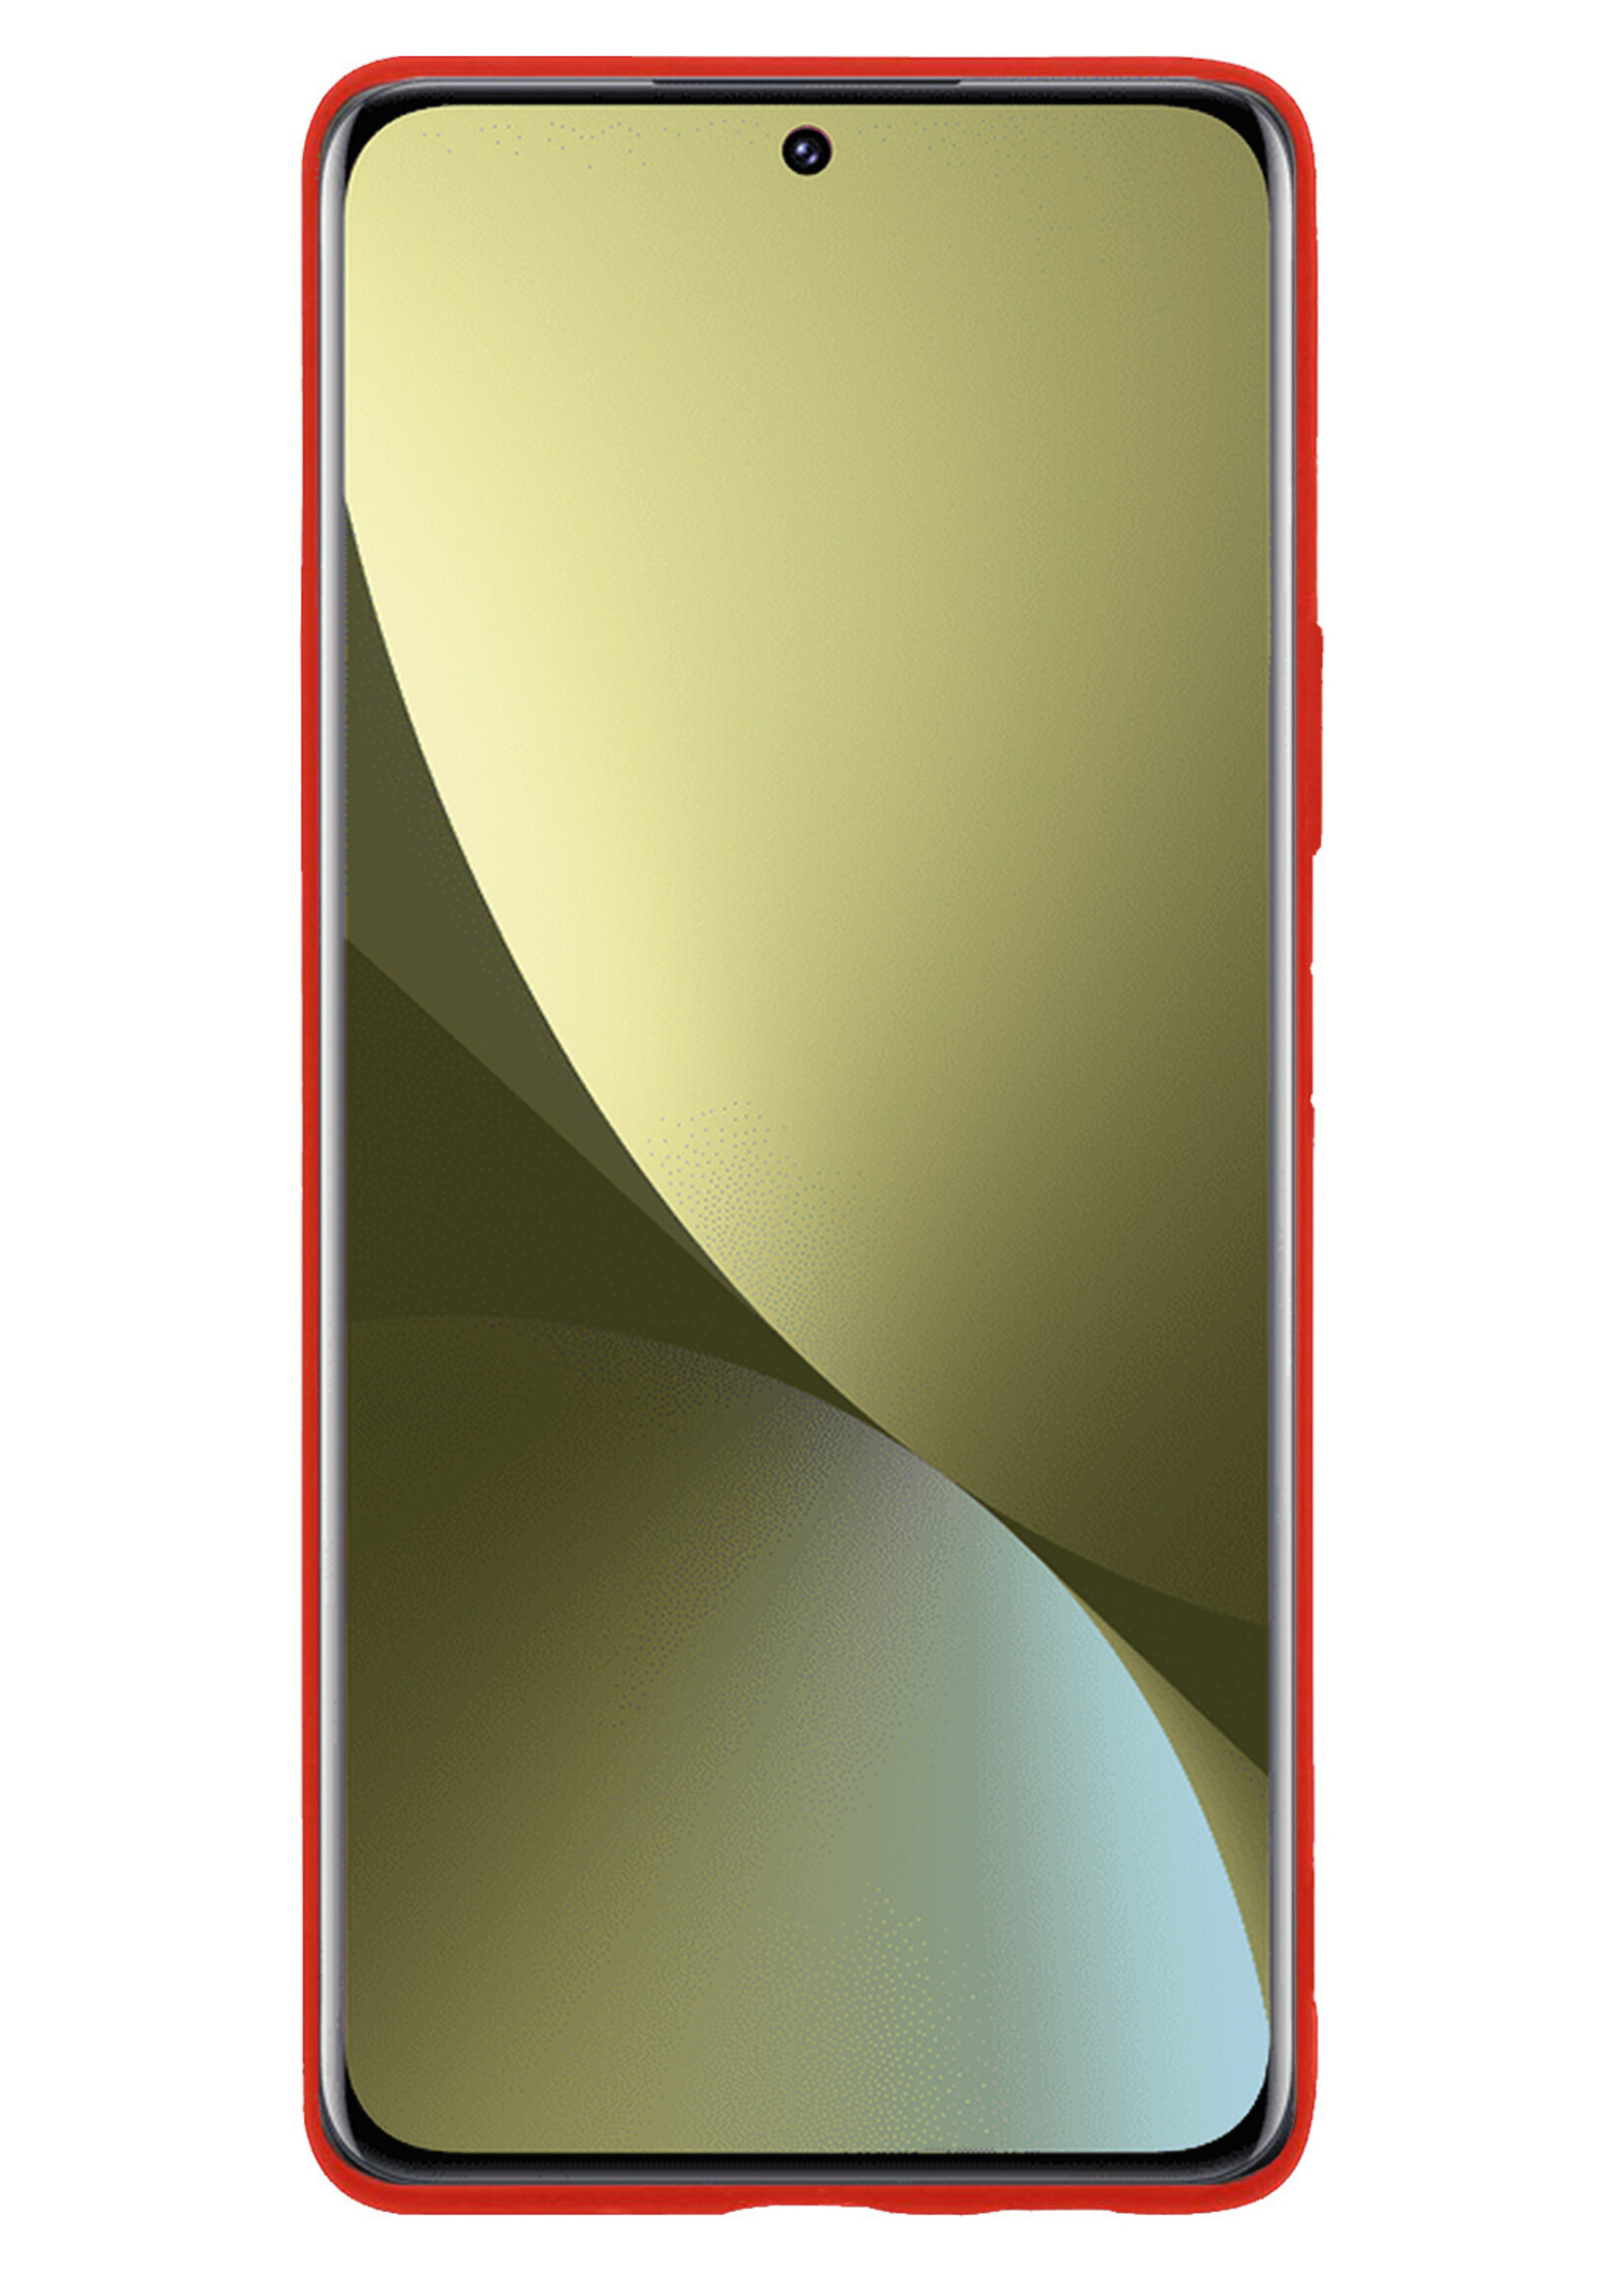 LUQ Hoesje Geschikt voor Xiaomi 12 Pro Hoesje Siliconen Case - Hoes Geschikt voor Xiaomi 12 Pro Hoes Siliconen - Rood - 2 Stuks